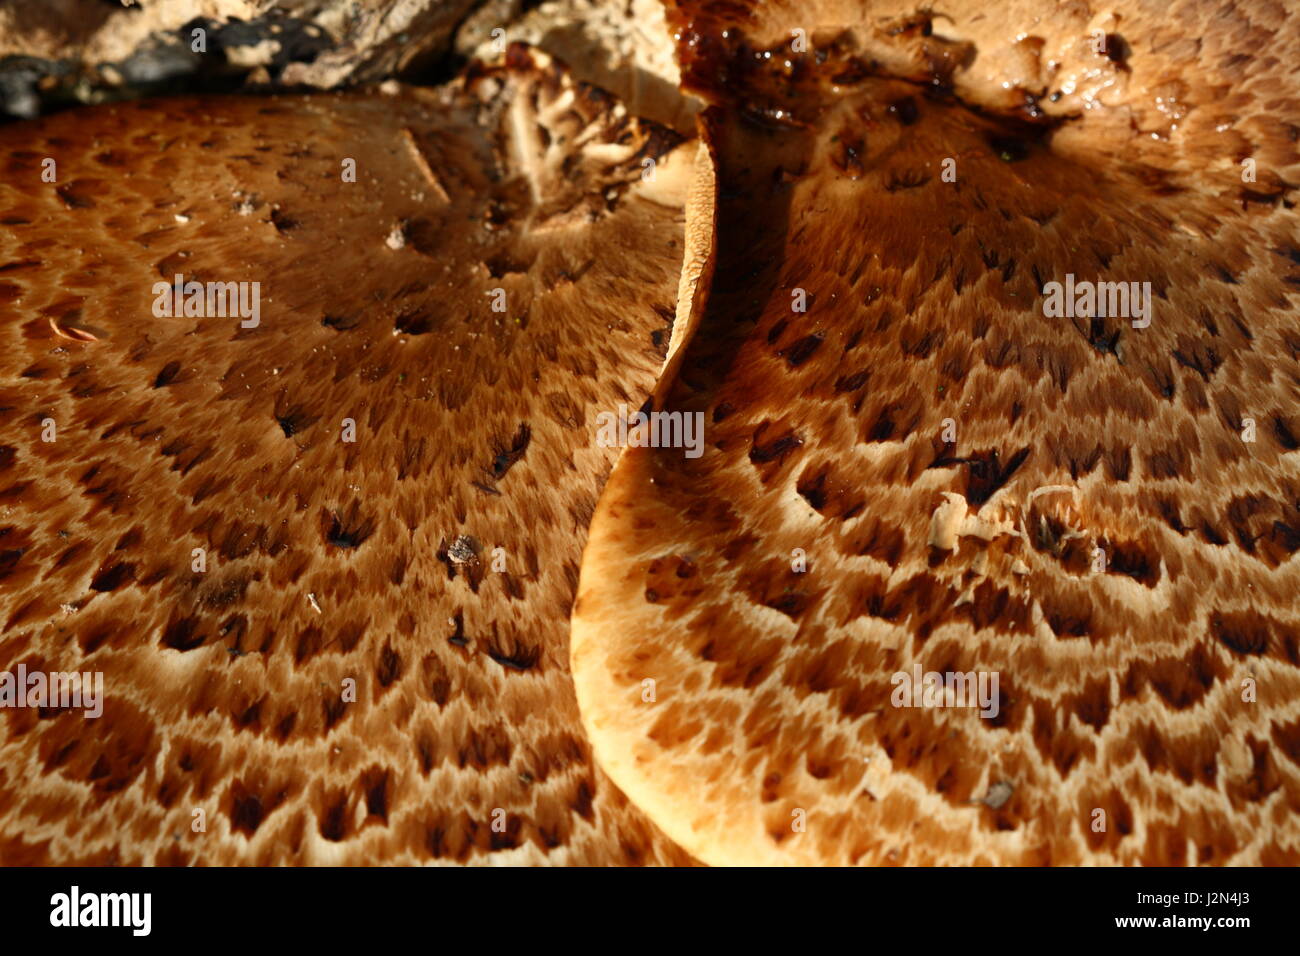 Dryad's Saddle fungus Stock Photo